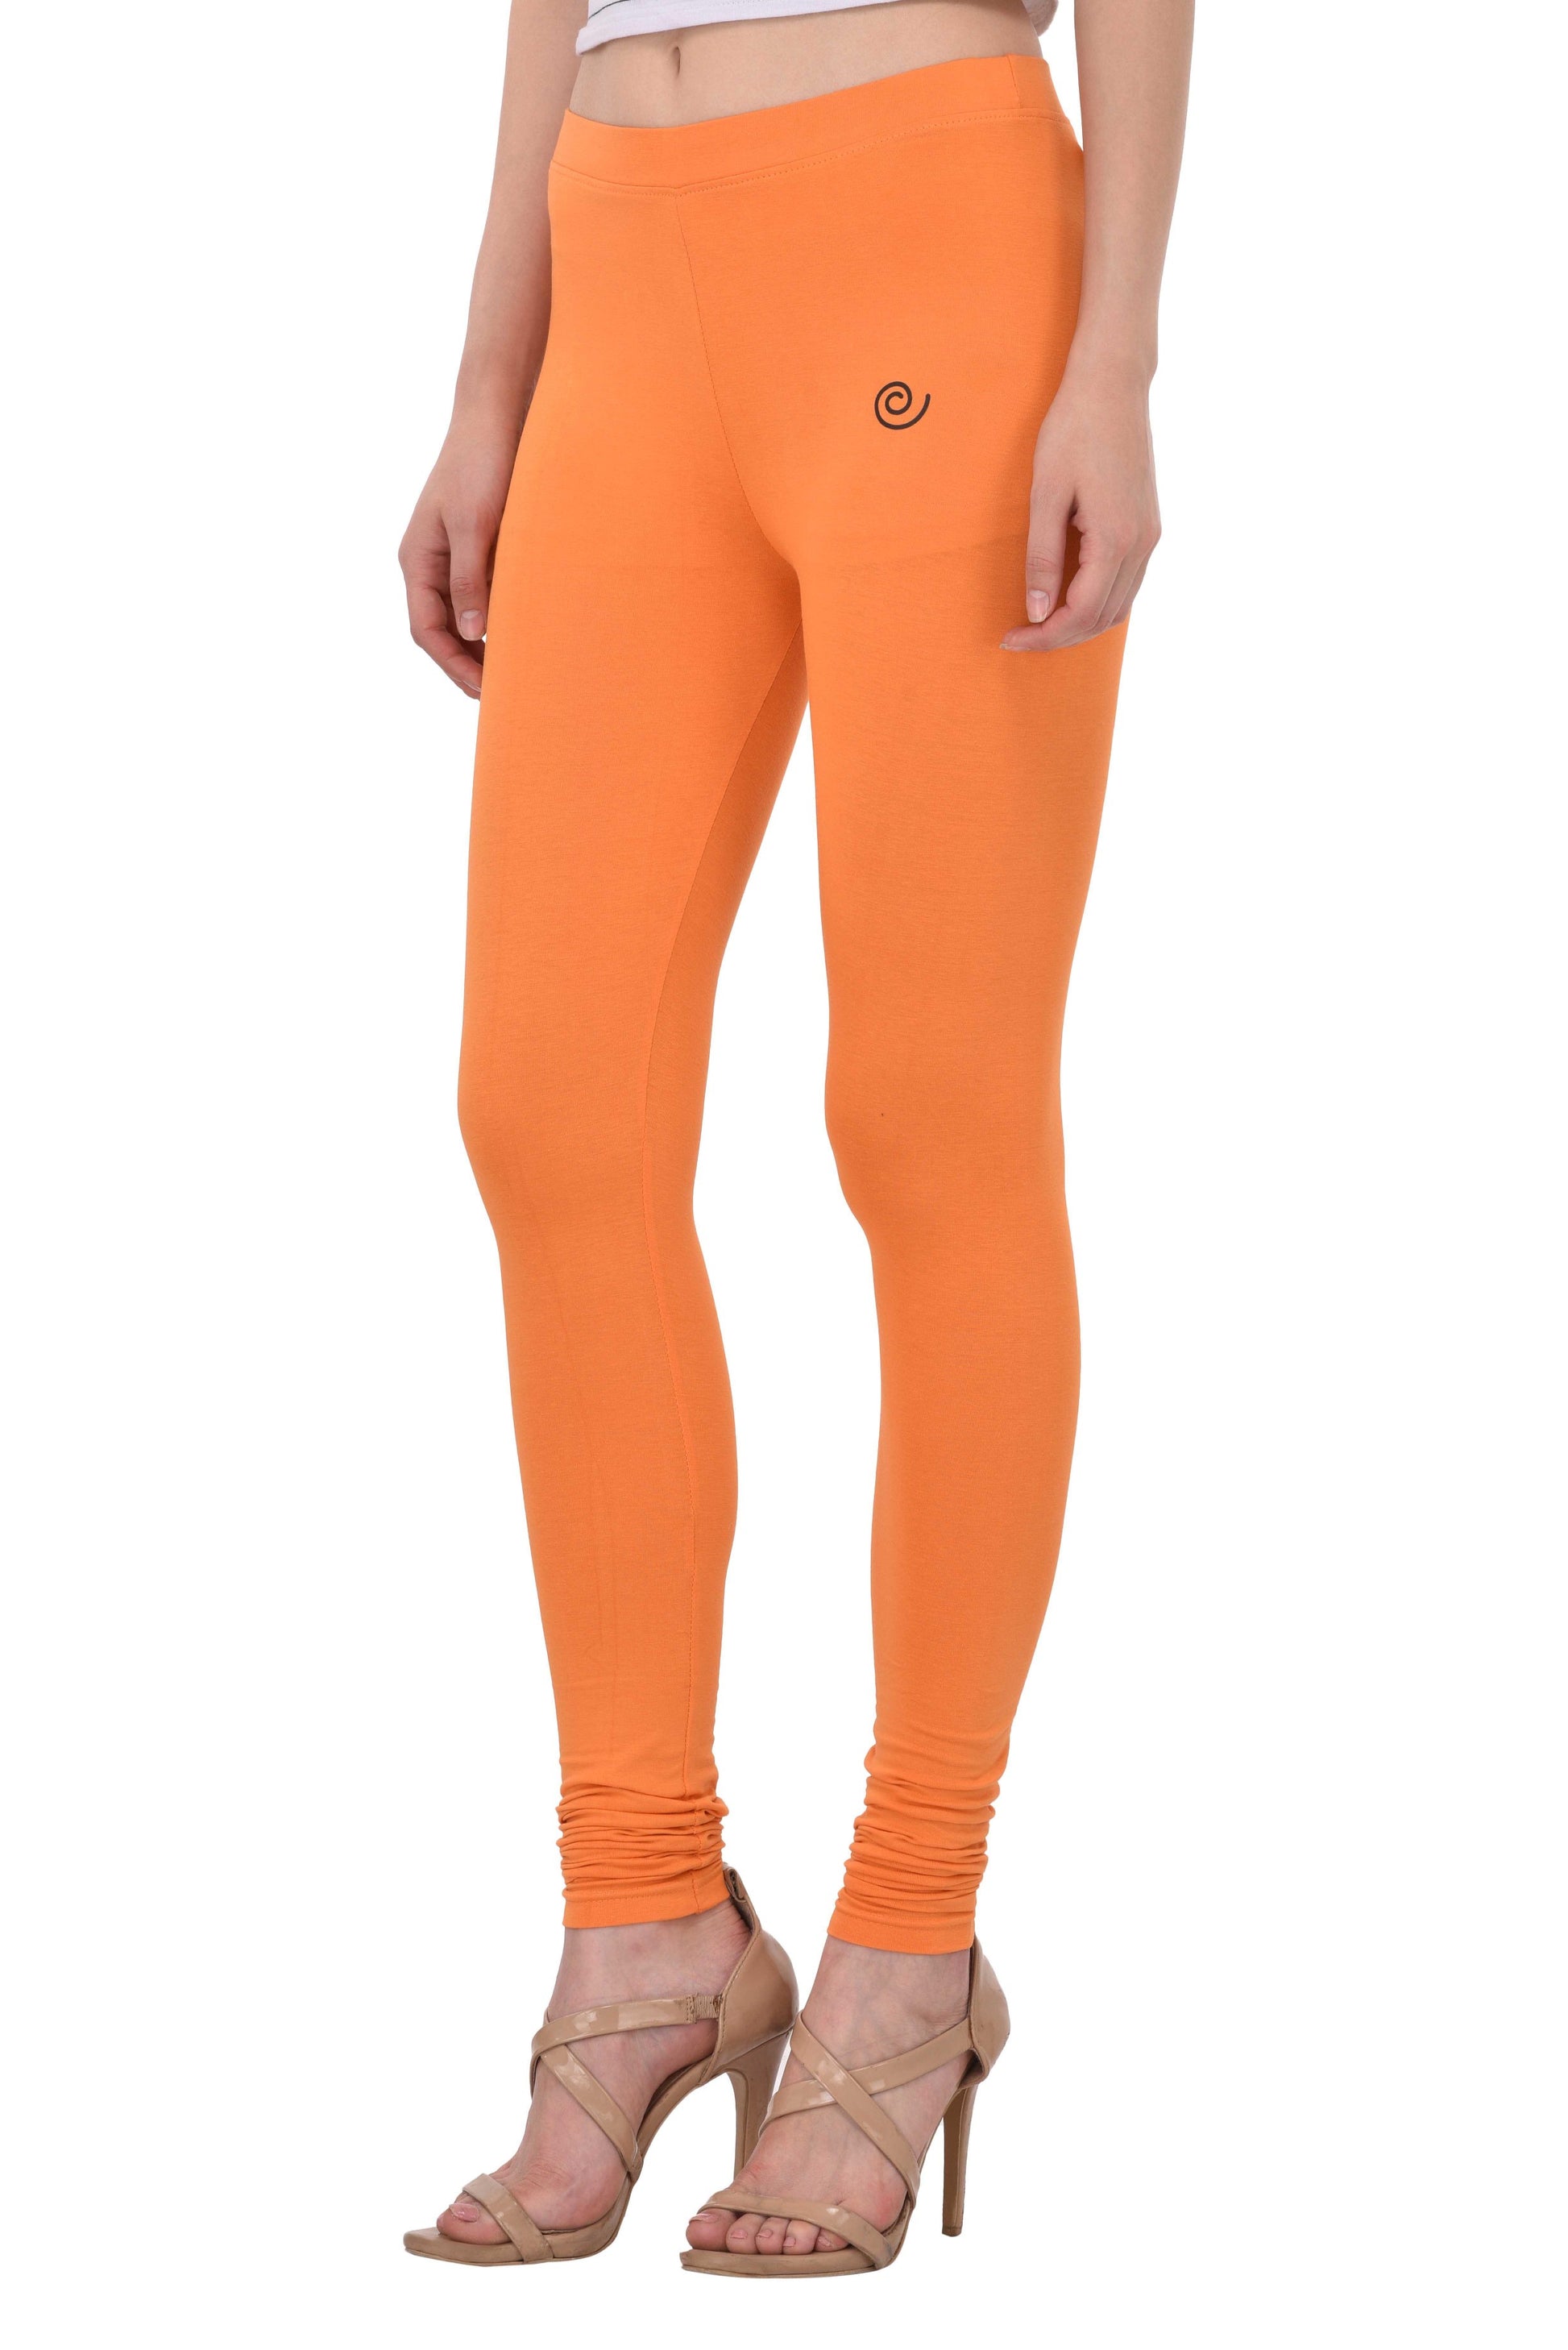 Diti Mandarin Orange Cotton Leggings for Women Diti